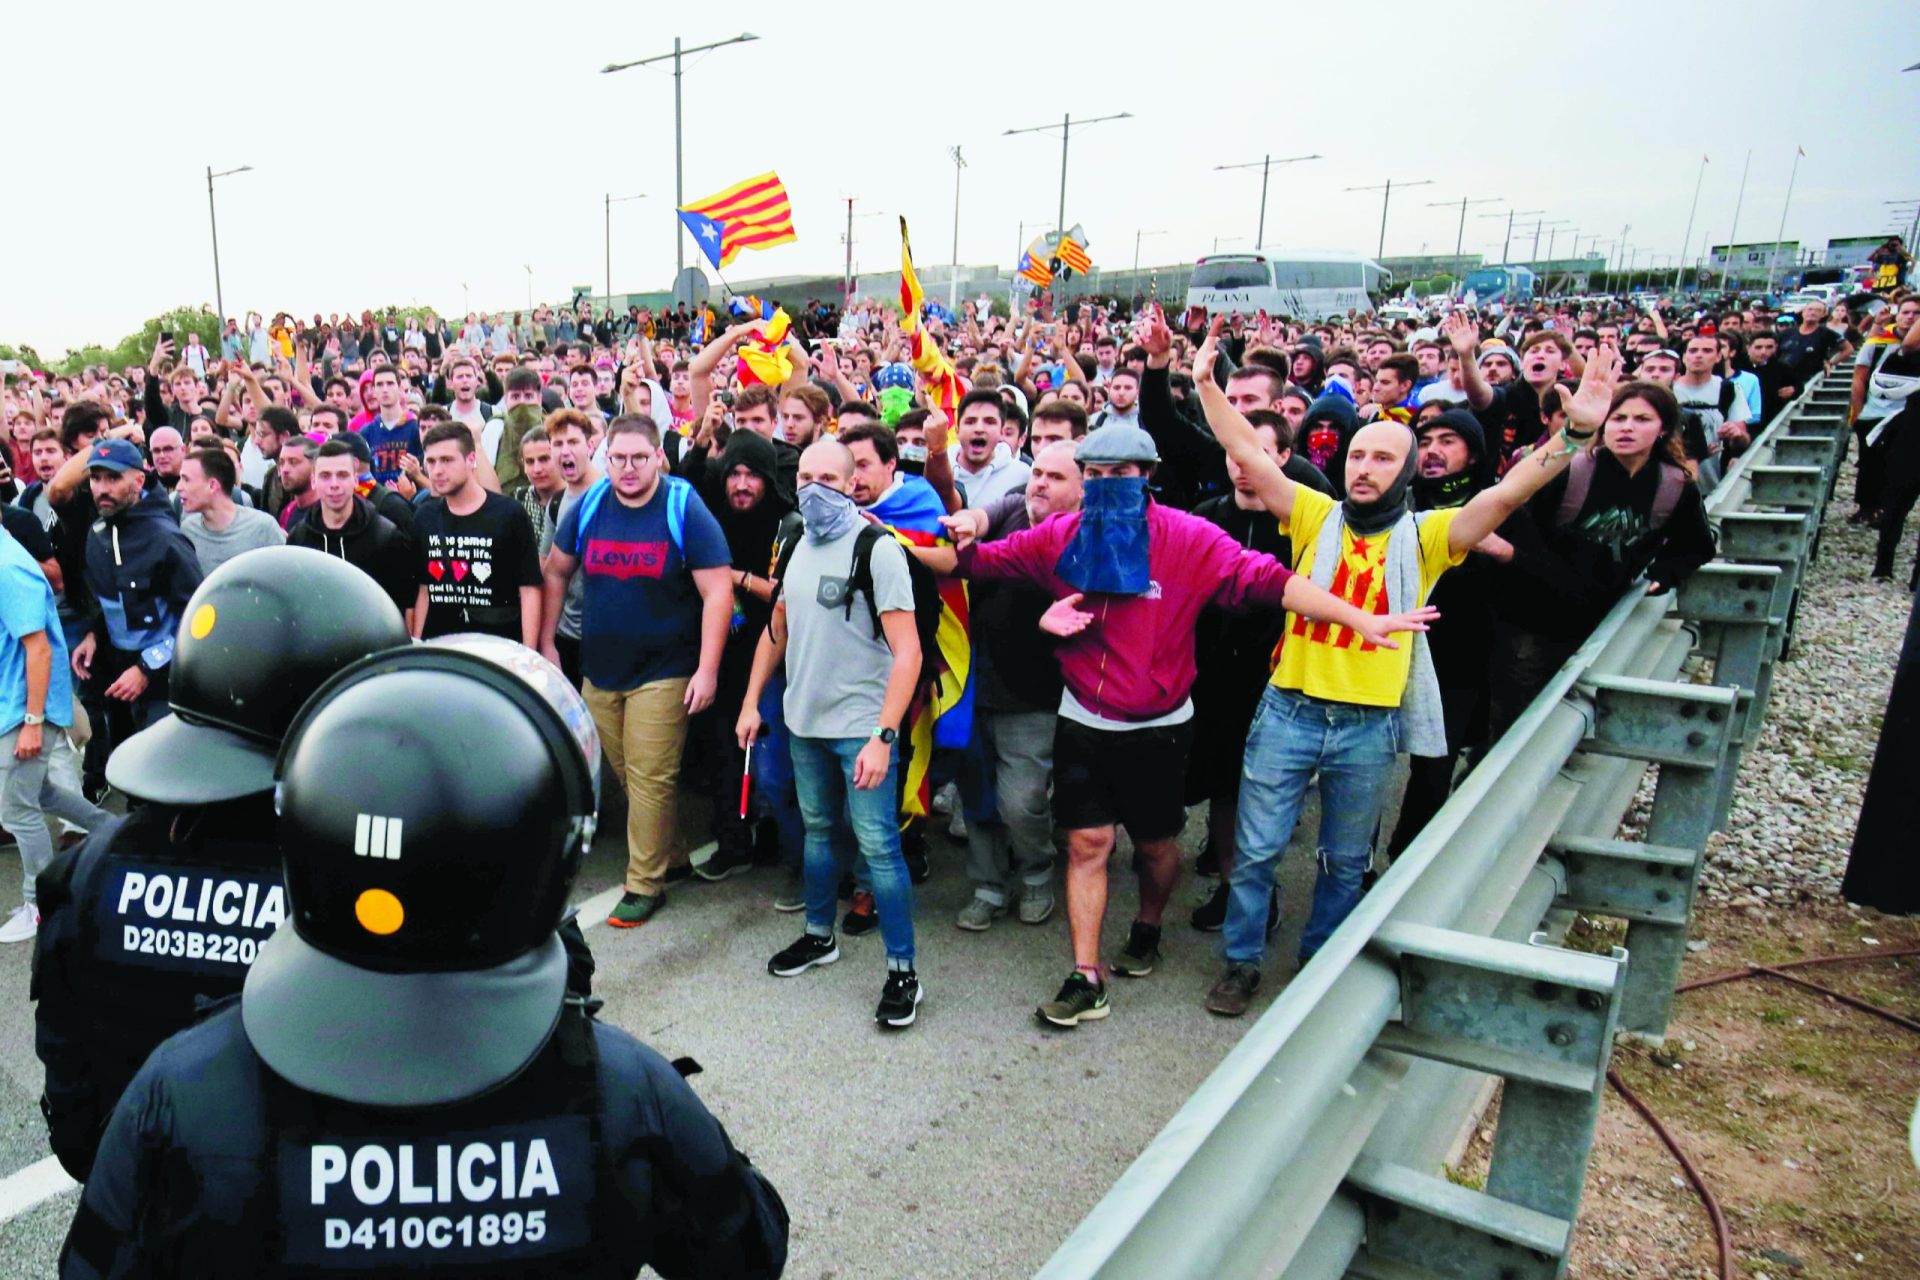 Duras penas para líderes catalães, Sánchez recusa perdão